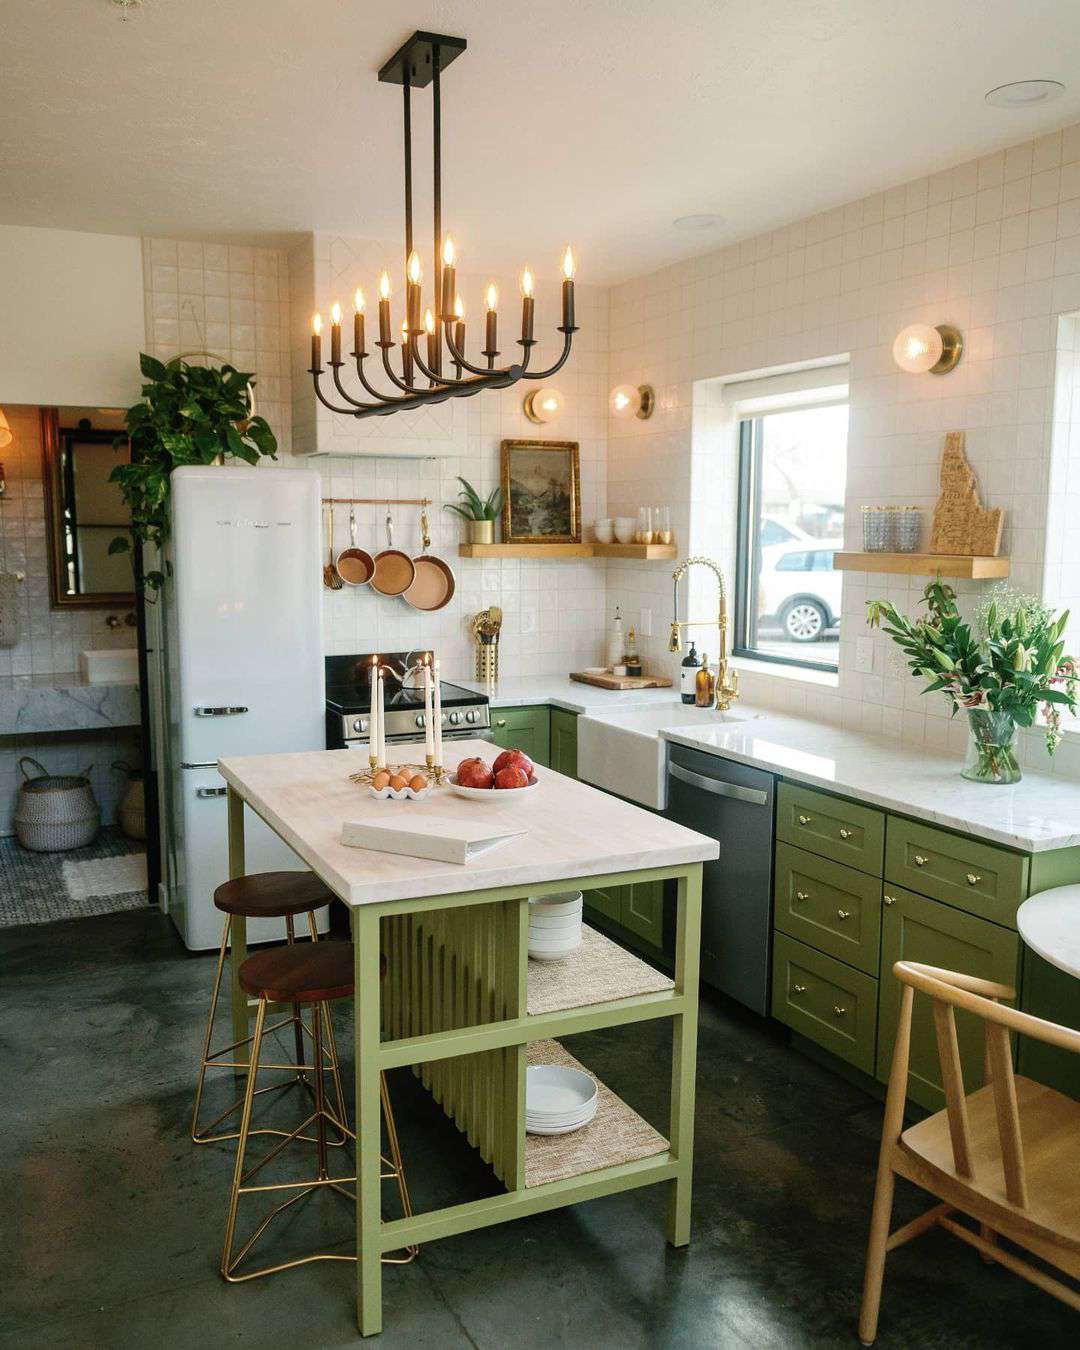 Thiết kế nhà bếp với gam màu hot nhất mùa hè năm nay - màu xanh lá cây xô thơm - Ảnh 1.